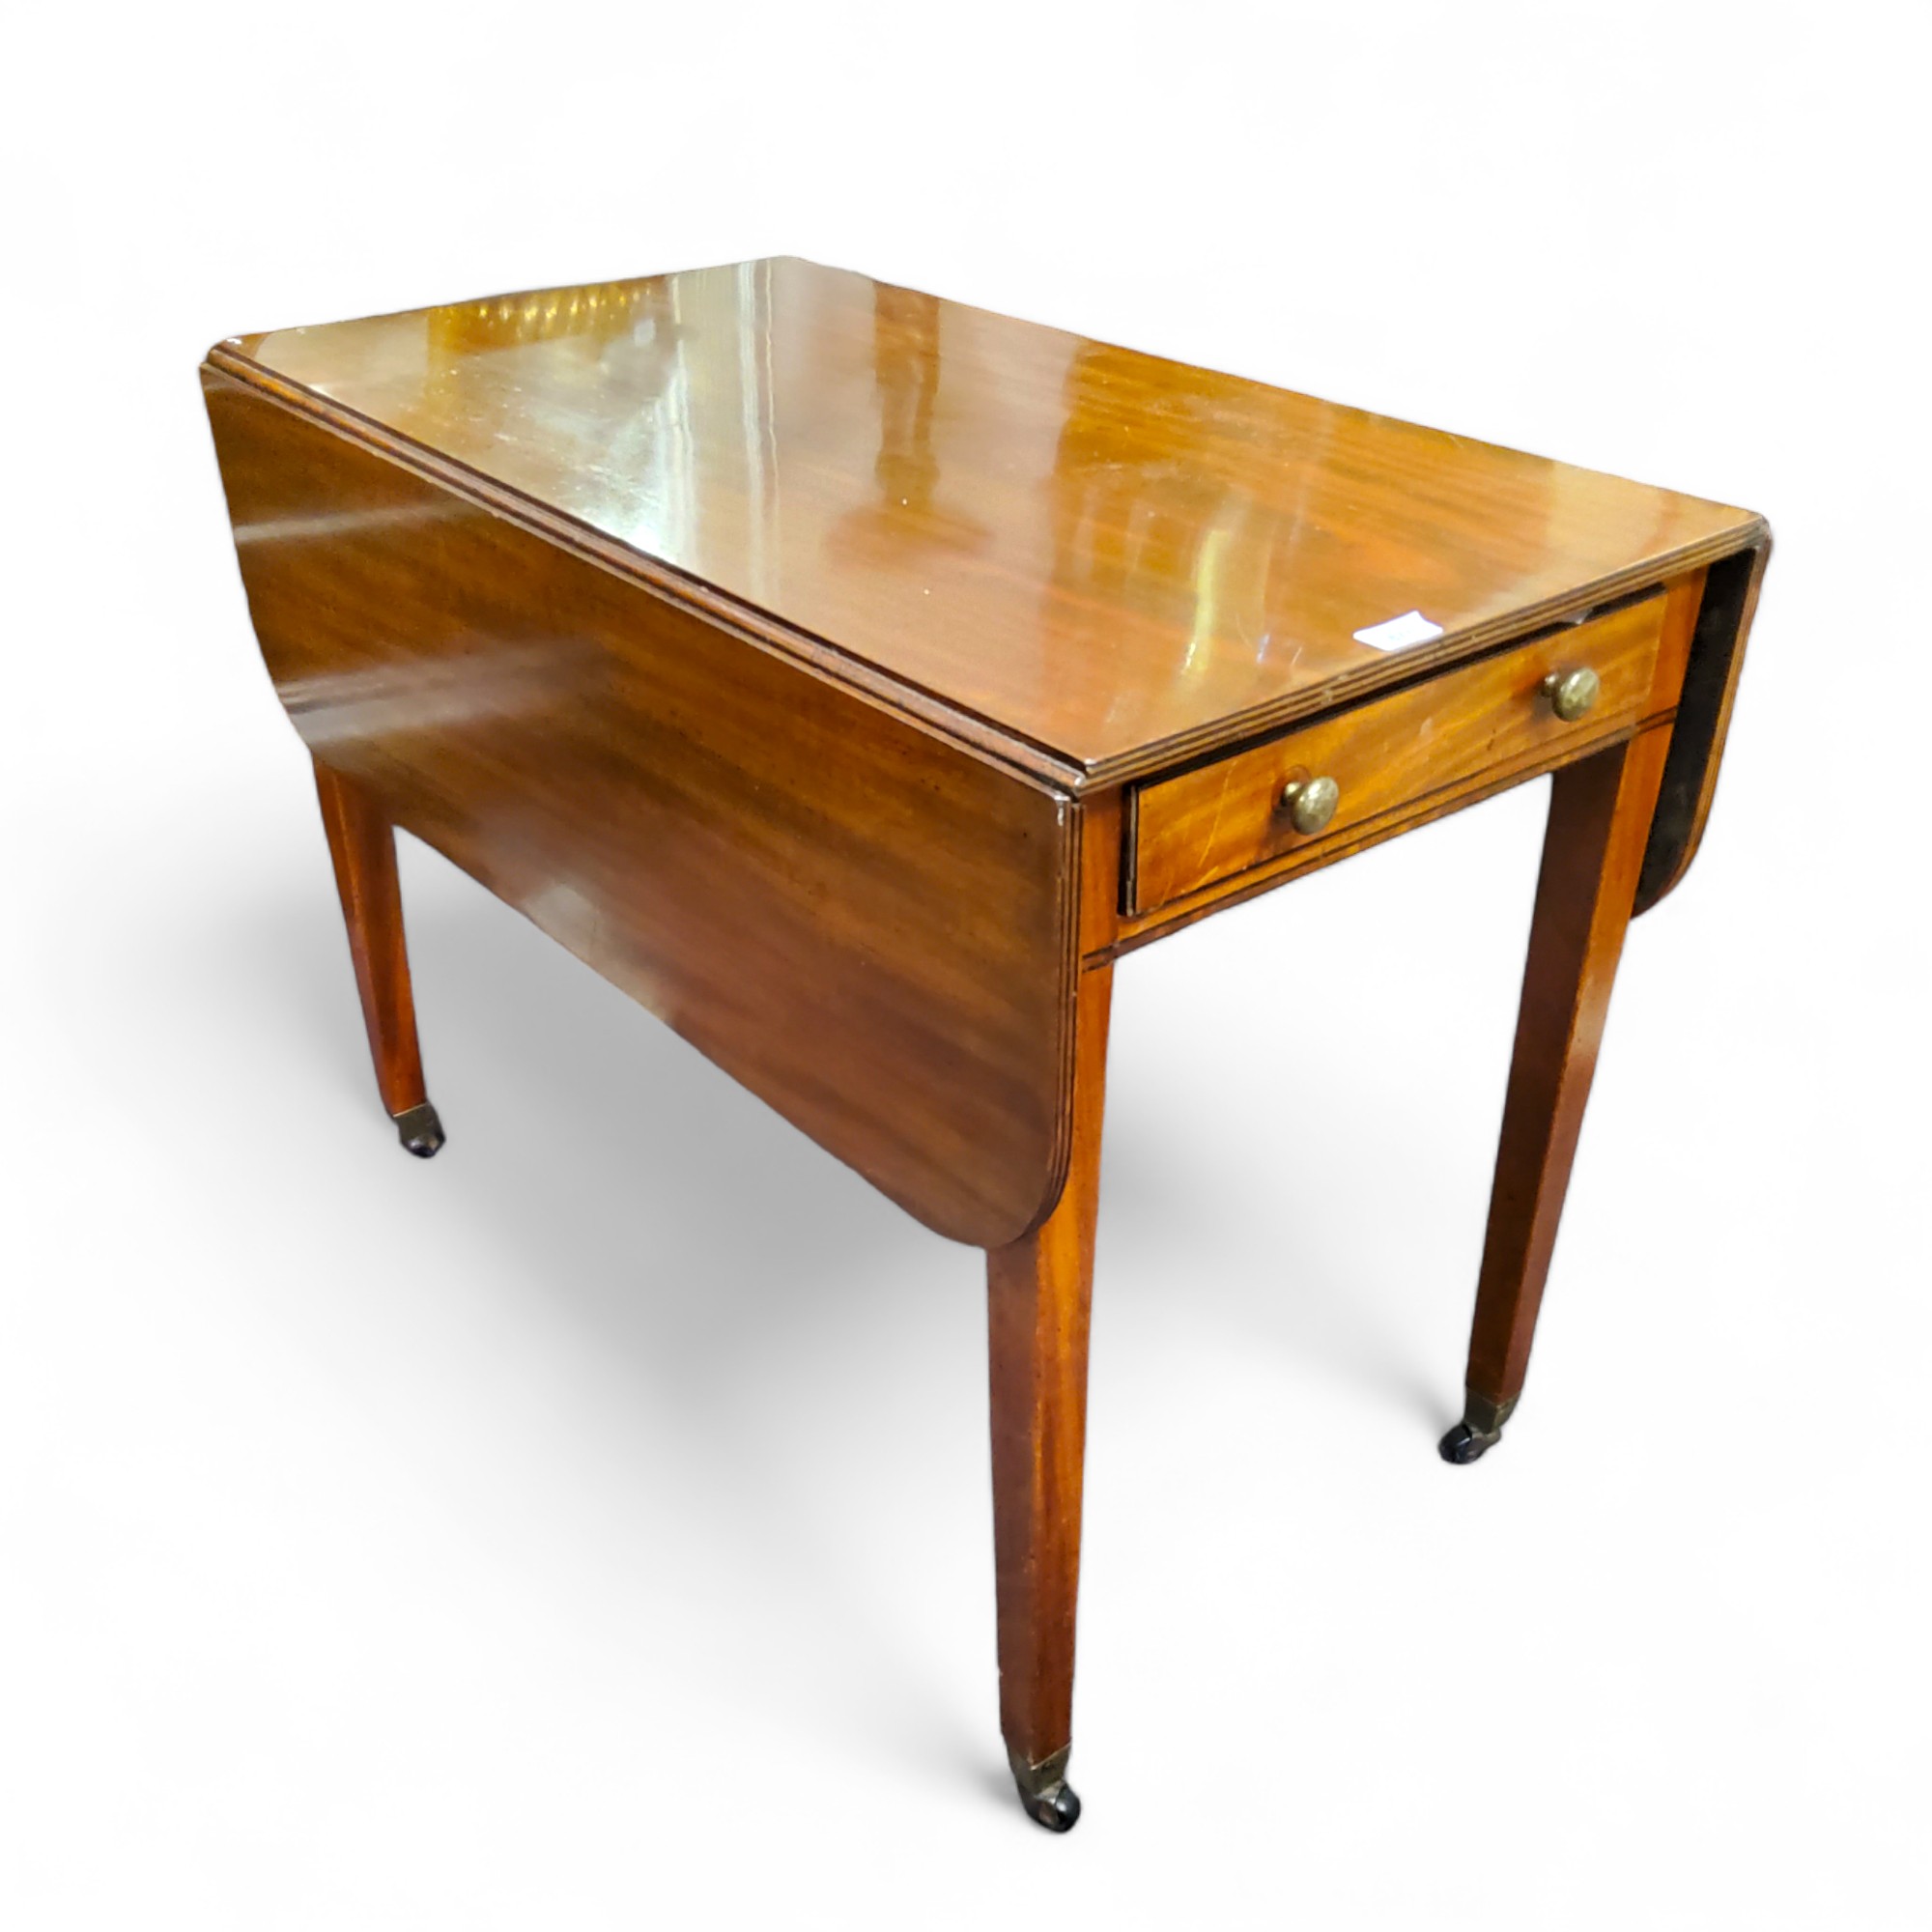 A Victorian mahogany Pembroke table, 72cm high, 105cm wide, c.1860